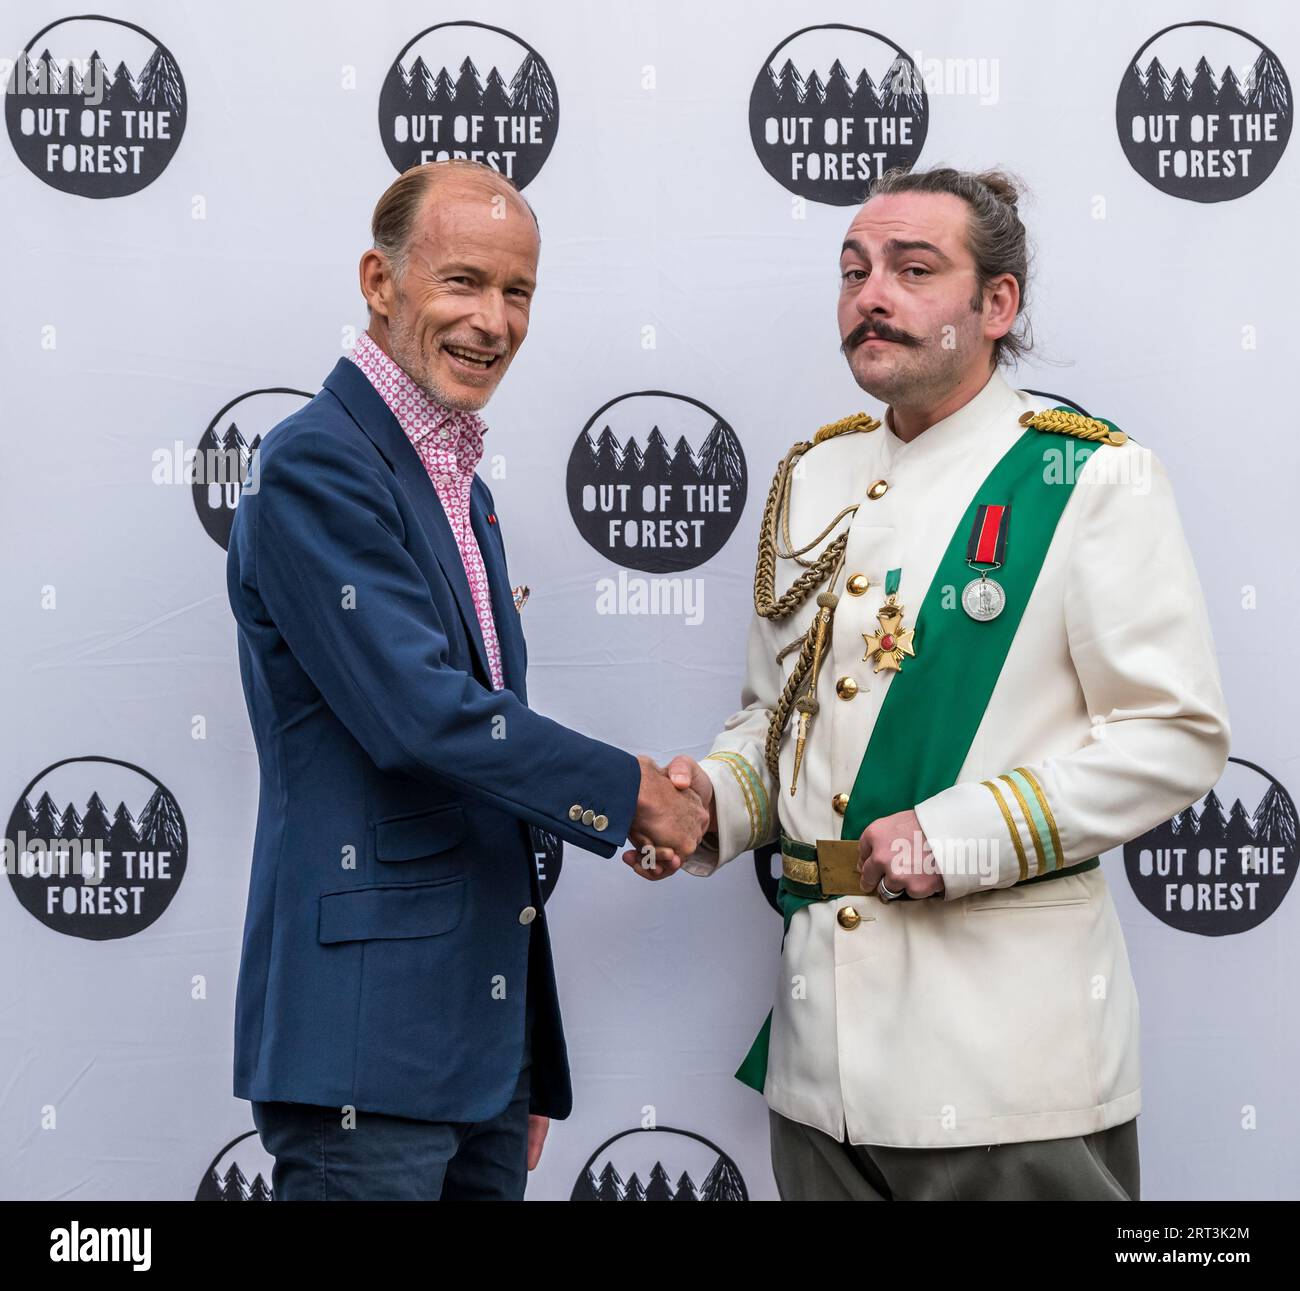 Joseph Cullen (The Brief Life & Mysterious Death of Boris III) rencontre SAR le Prince Kyril de Bulgarie, Edinburgh Festival Fringe, Ecosse, Royaume-Uni Banque D'Images